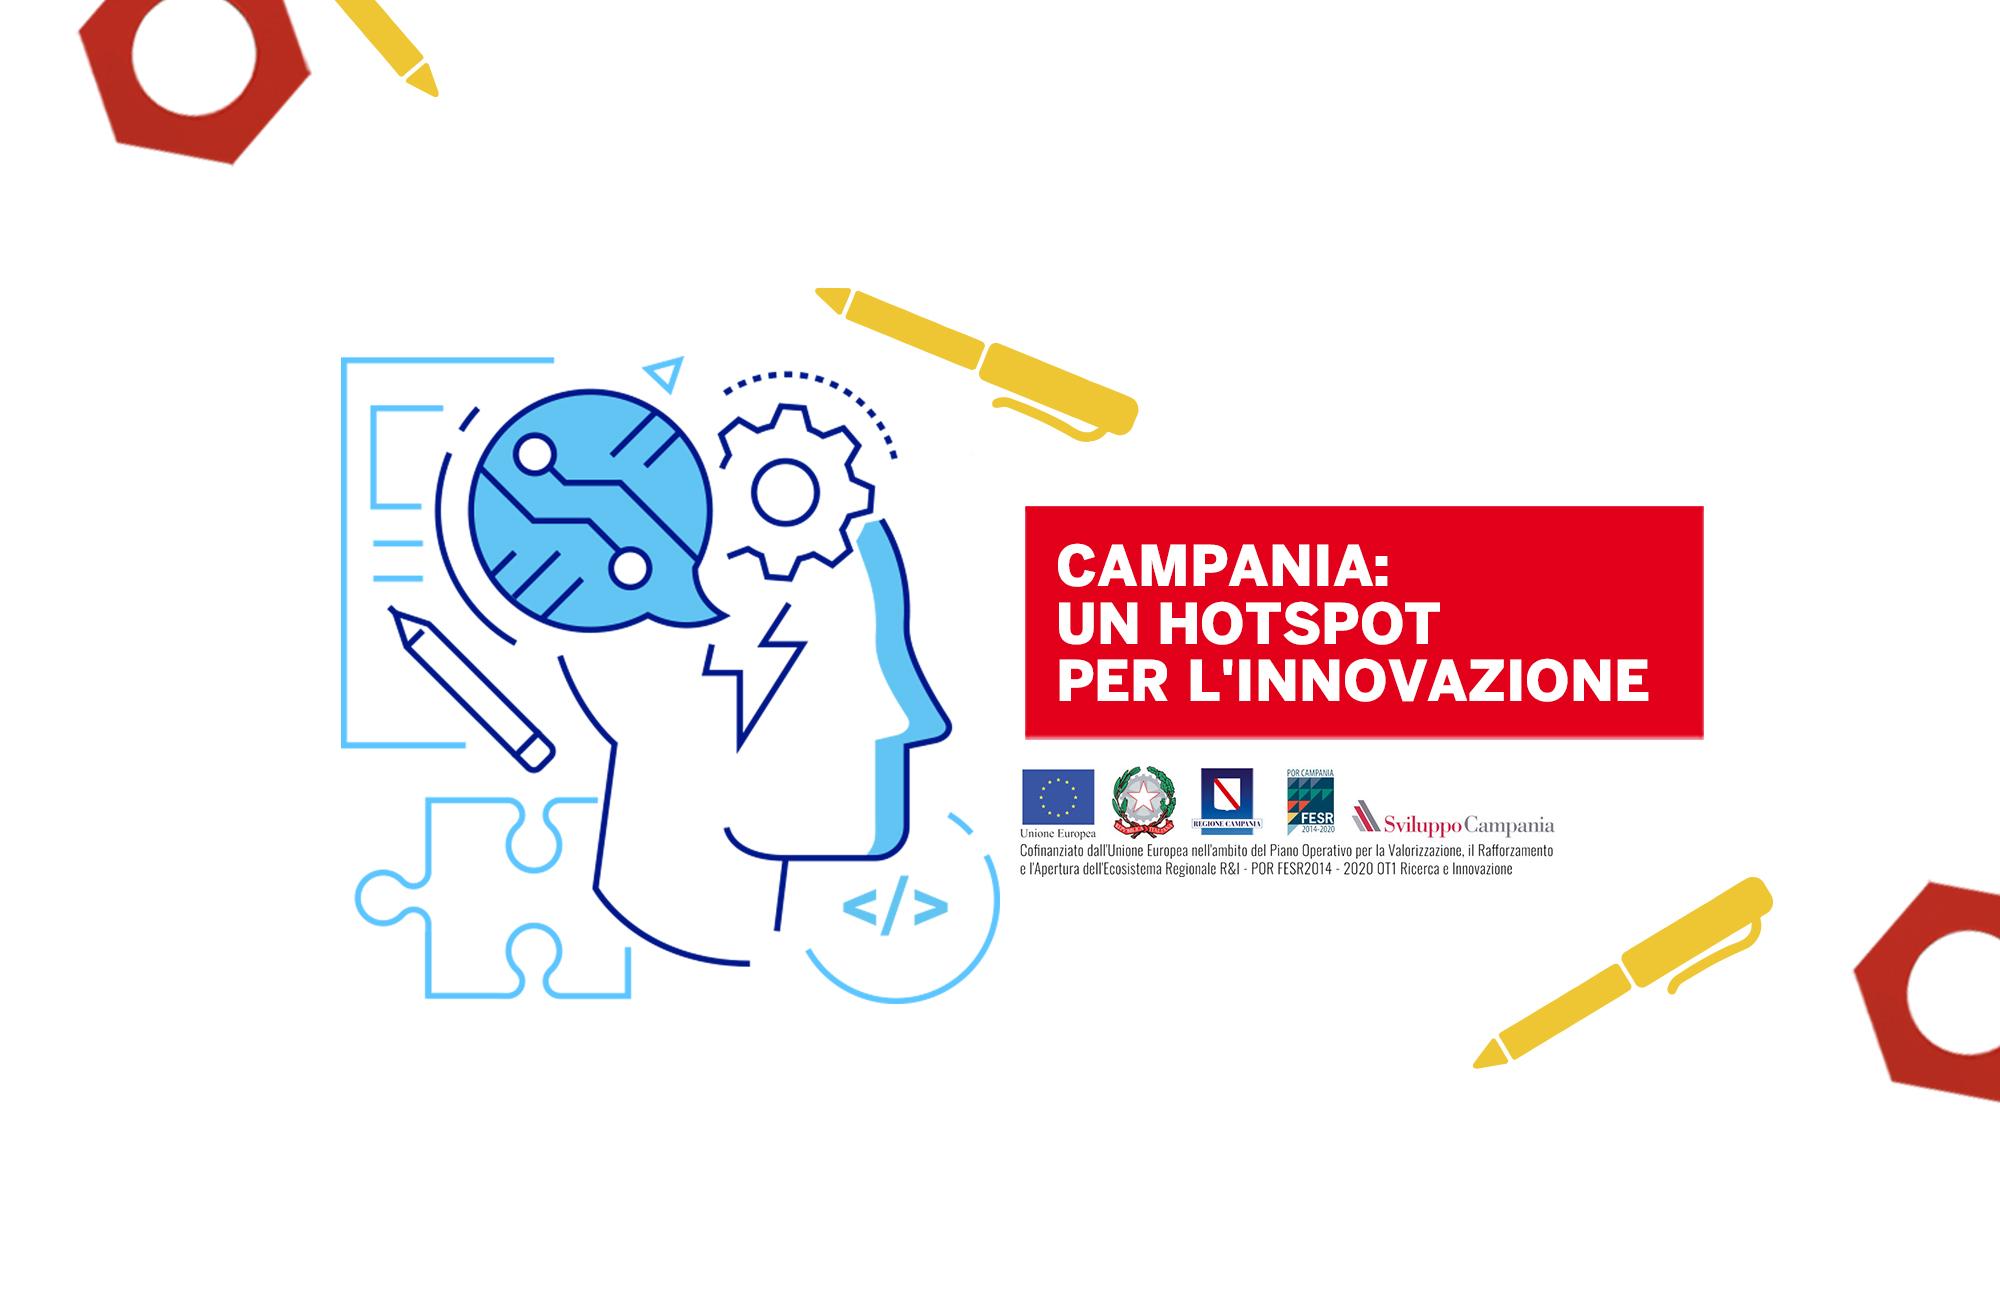 Campania: un hotspot per l'innovazione